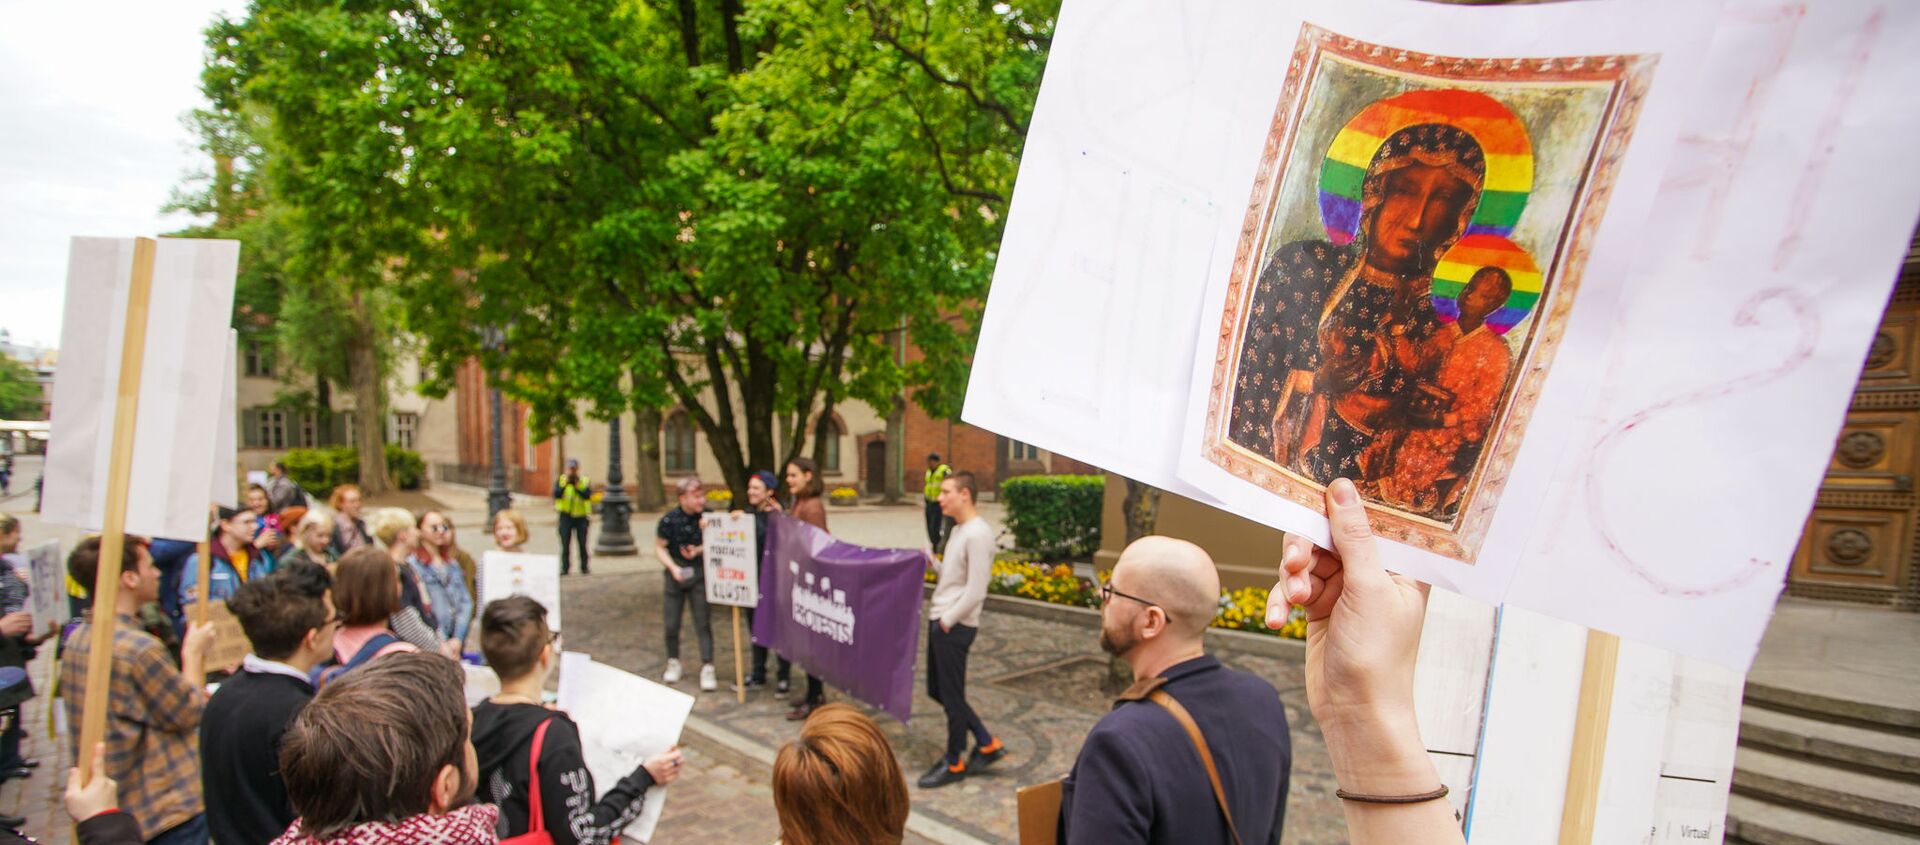  Пикет молодежной организации Протест за права представителей ЛГБТ - Sputnik Latvija, 1920, 21.06.2019